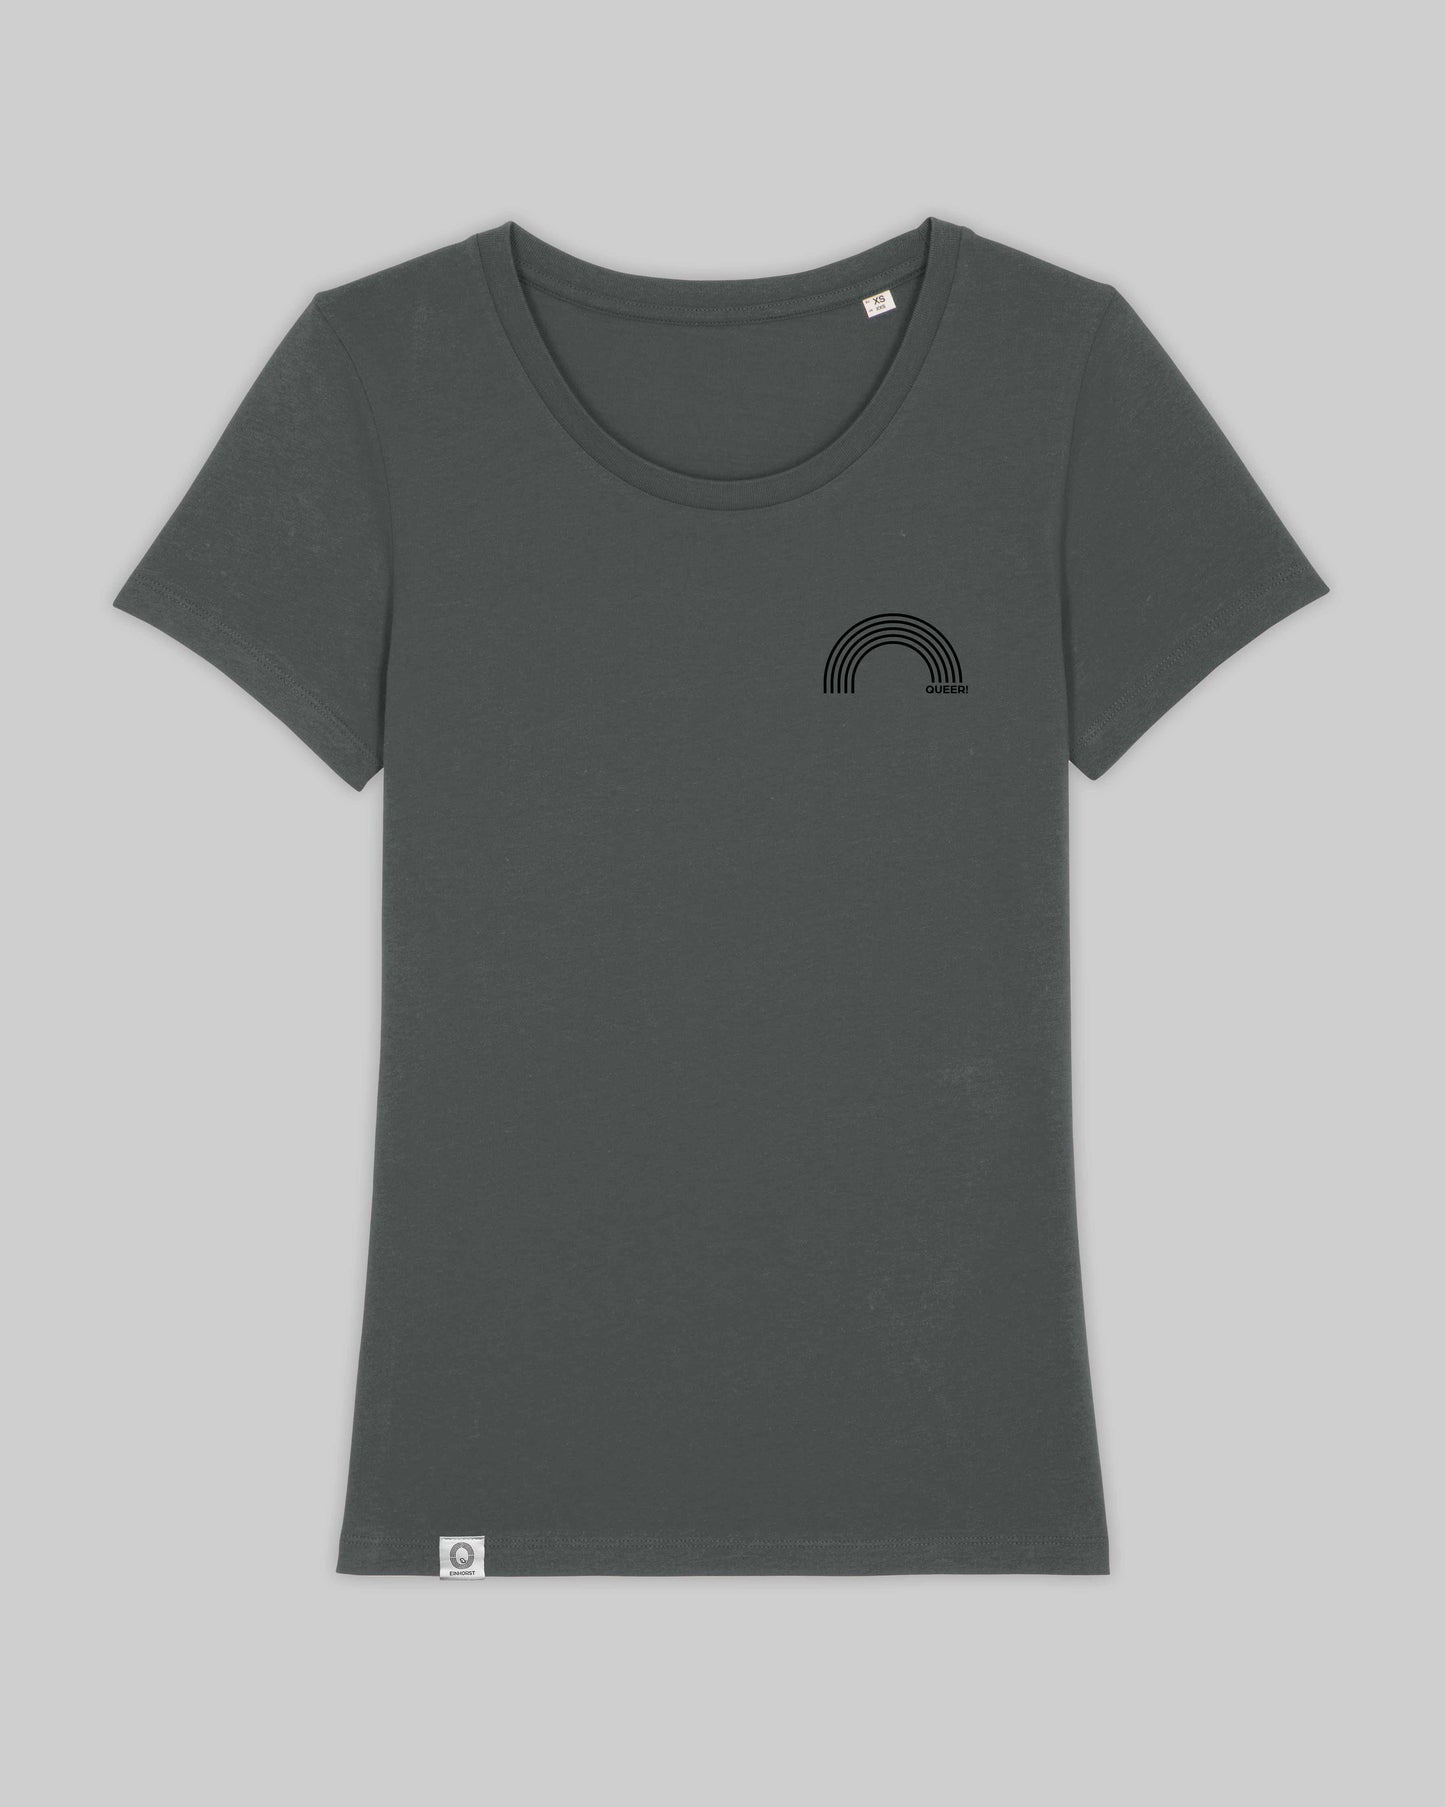 EINHORST® Organic Shirt tailliert in "Anthracite" mit dem Motiv "queer Regenbogen" in der Kombination schwarzer Regenbogen mit schwarzer Schrift, Bild von Shirt von vorne